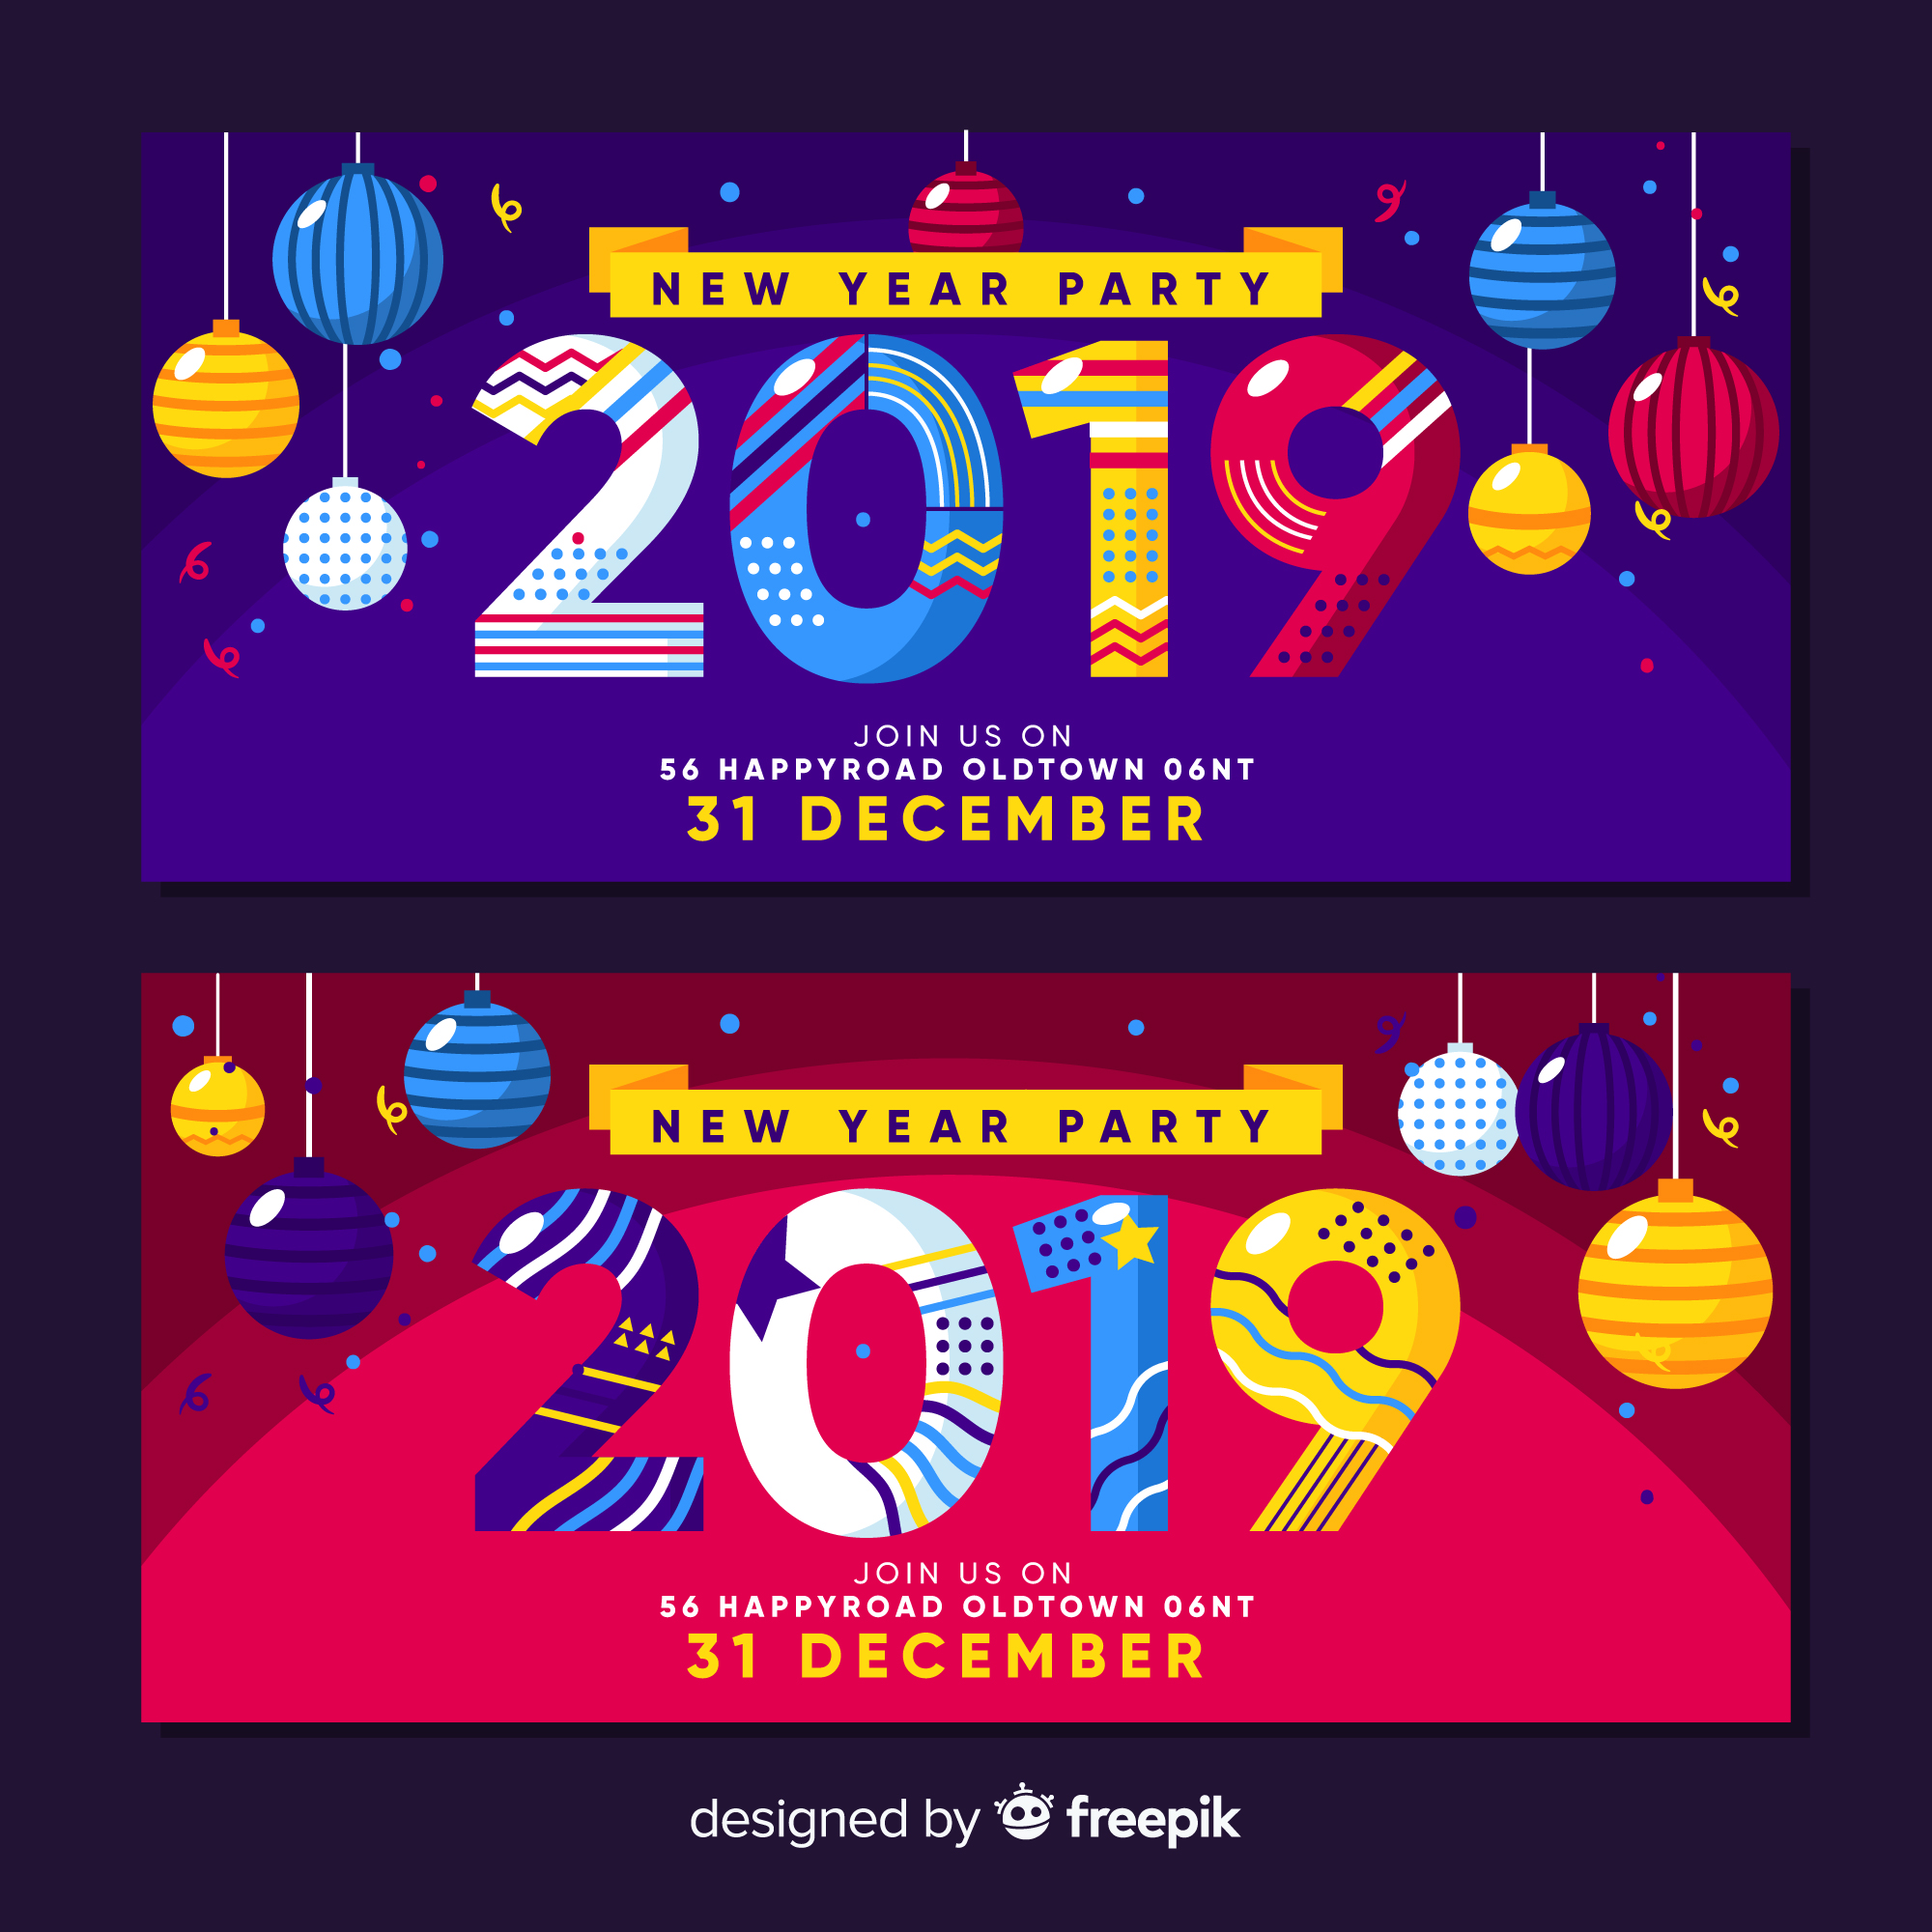 时尚高端绚丽震撼的2019新年元旦party派对海报banner设计模板插图